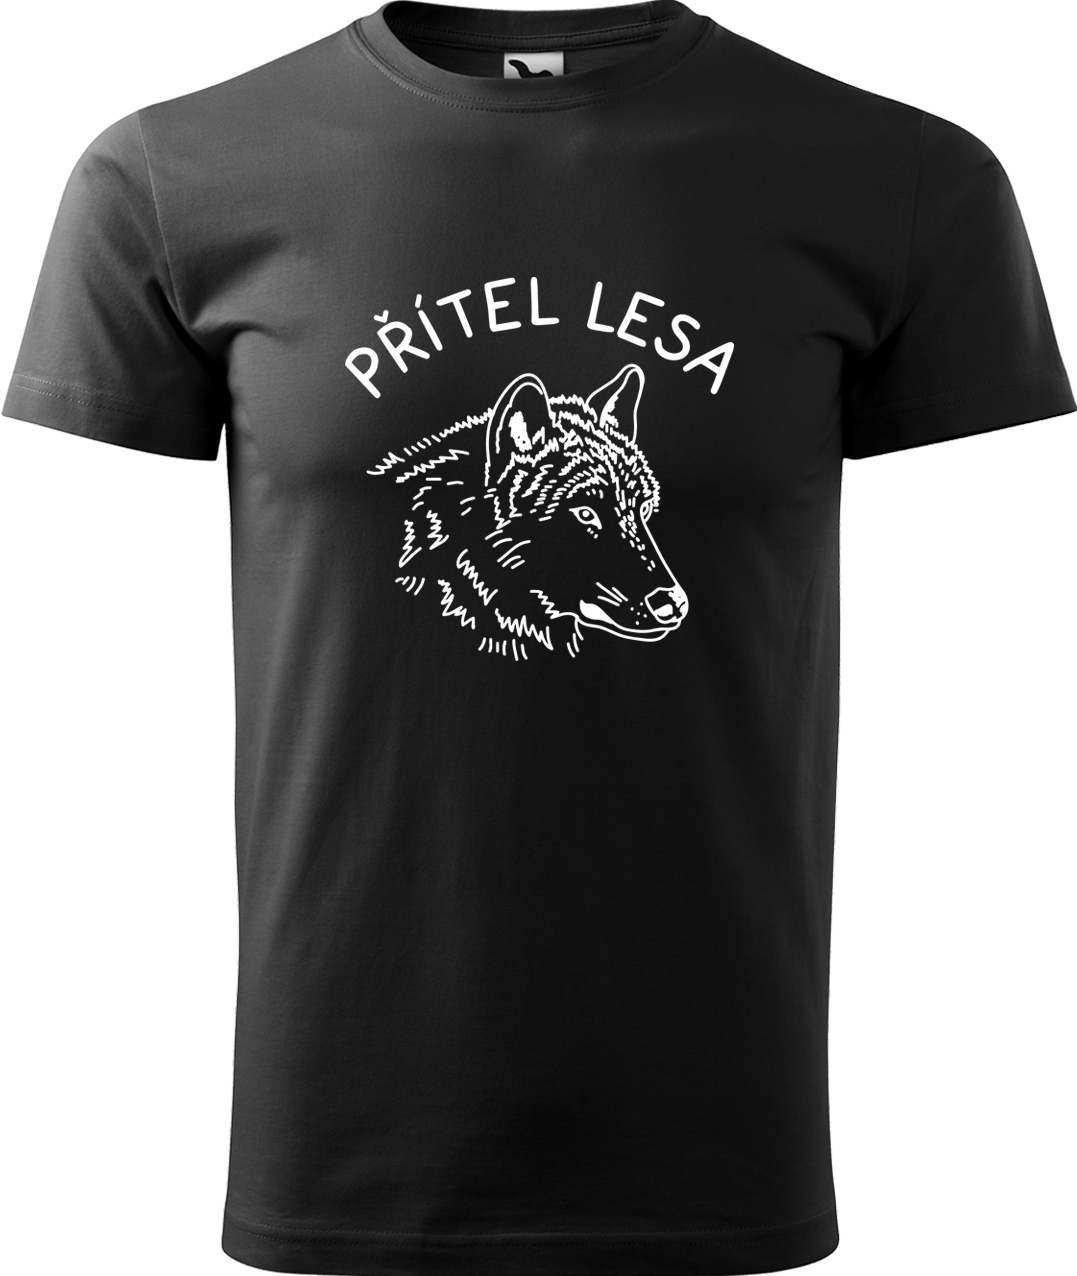 Pánské tričko s vlkem - Přítel lesa Velikost: 4XL, Barva: Černá (01), Střih: pánský